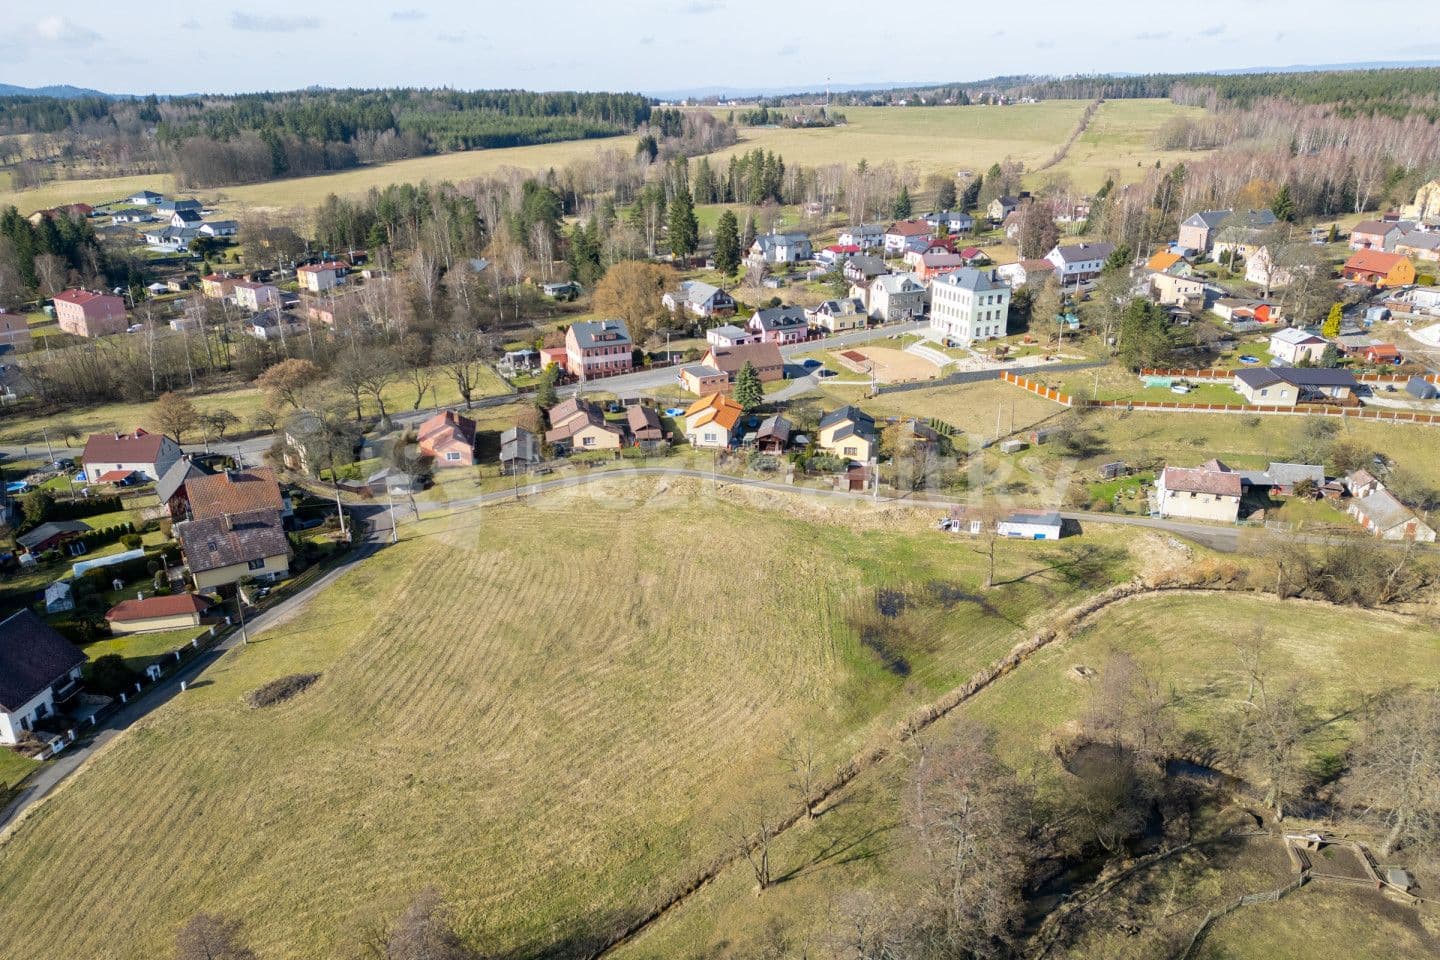 plot for sale, 1,769 m², Pila, Karlovarský Region